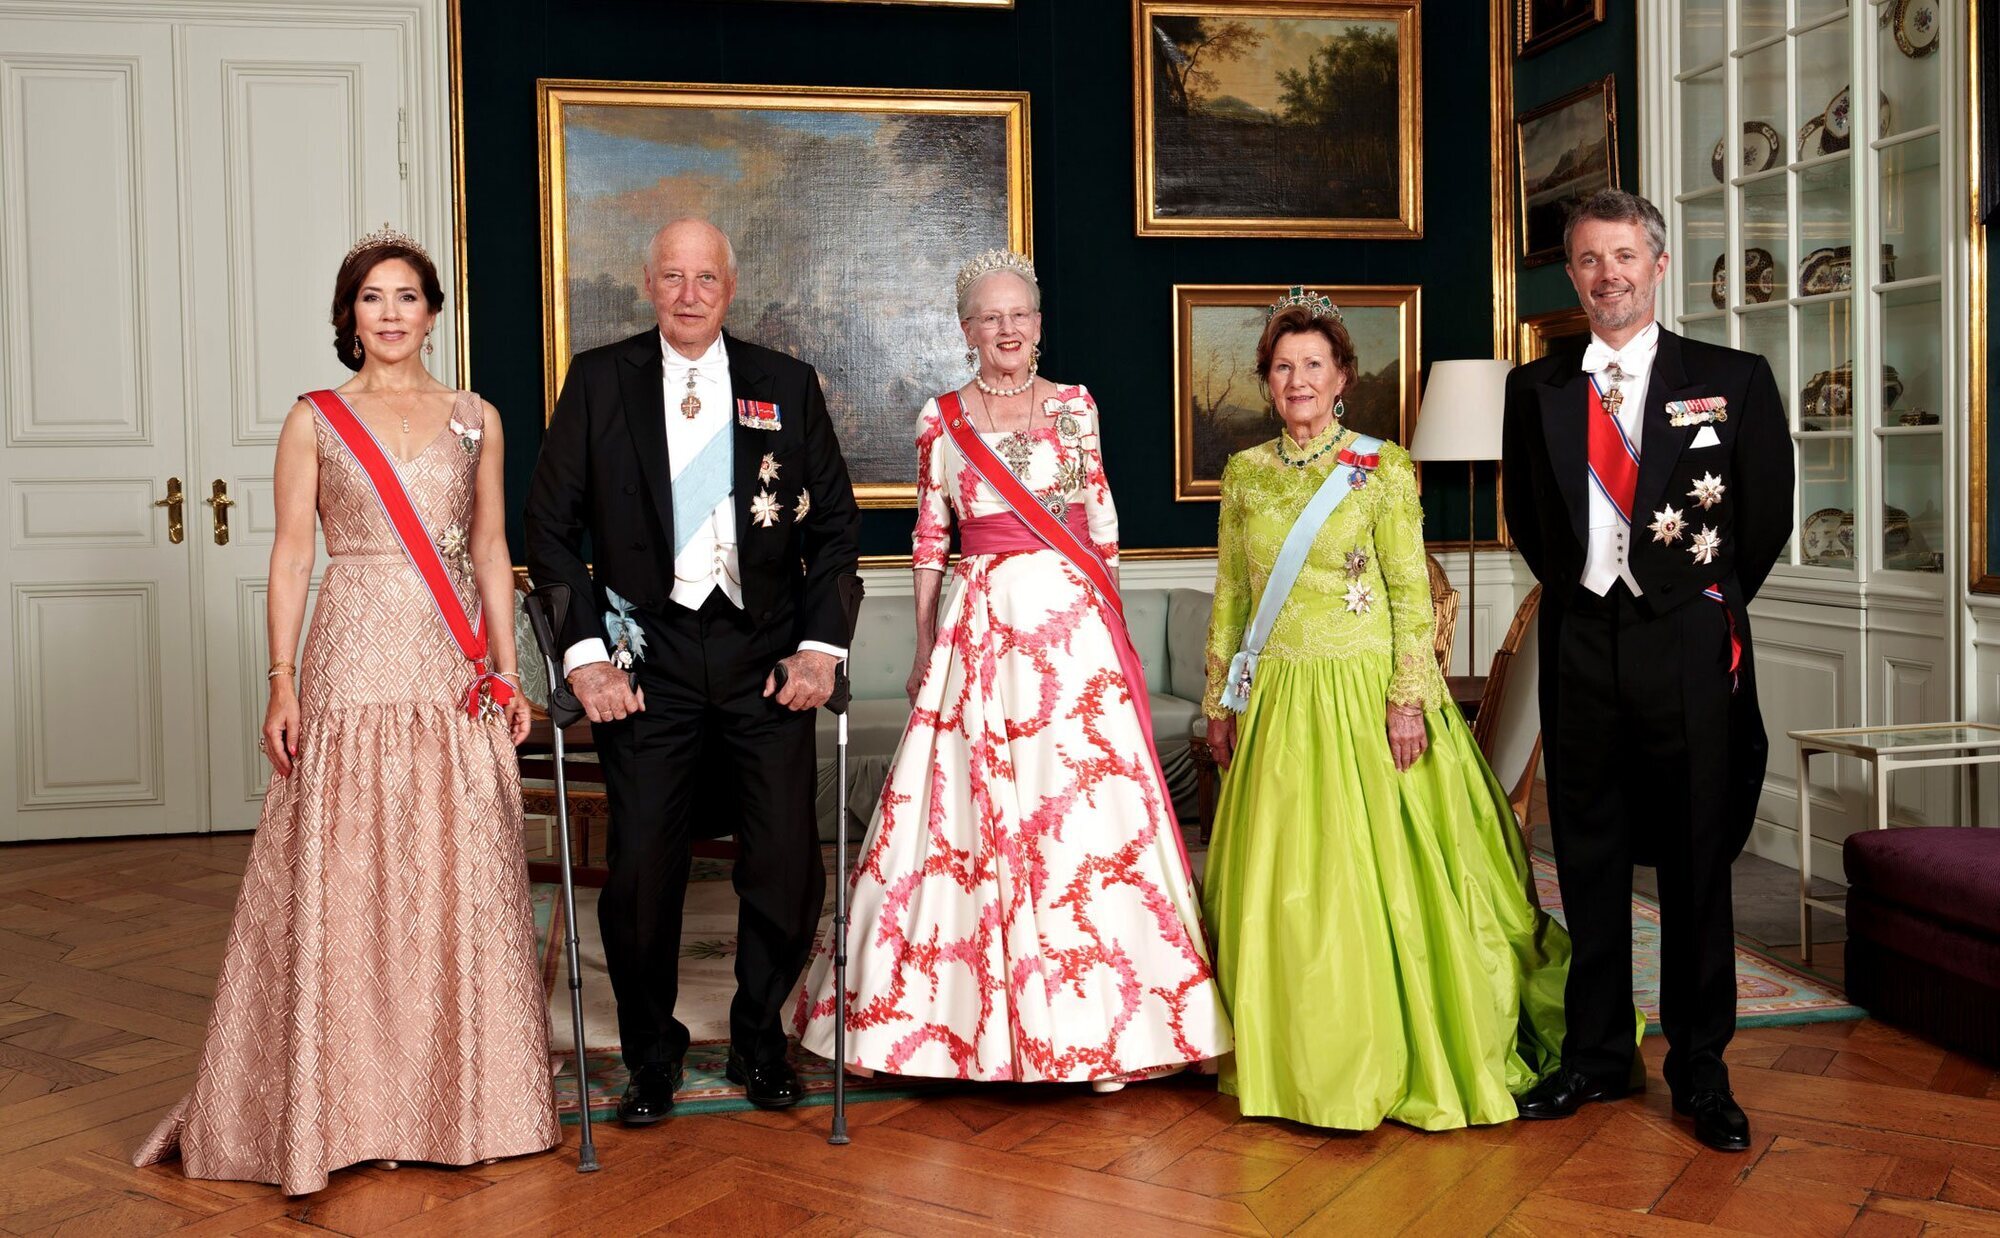 La cena de la Familia Real Danesa a Harald y Sonia de Noruega: tiaras, vestidos simbólicos, vino especial y un descuido